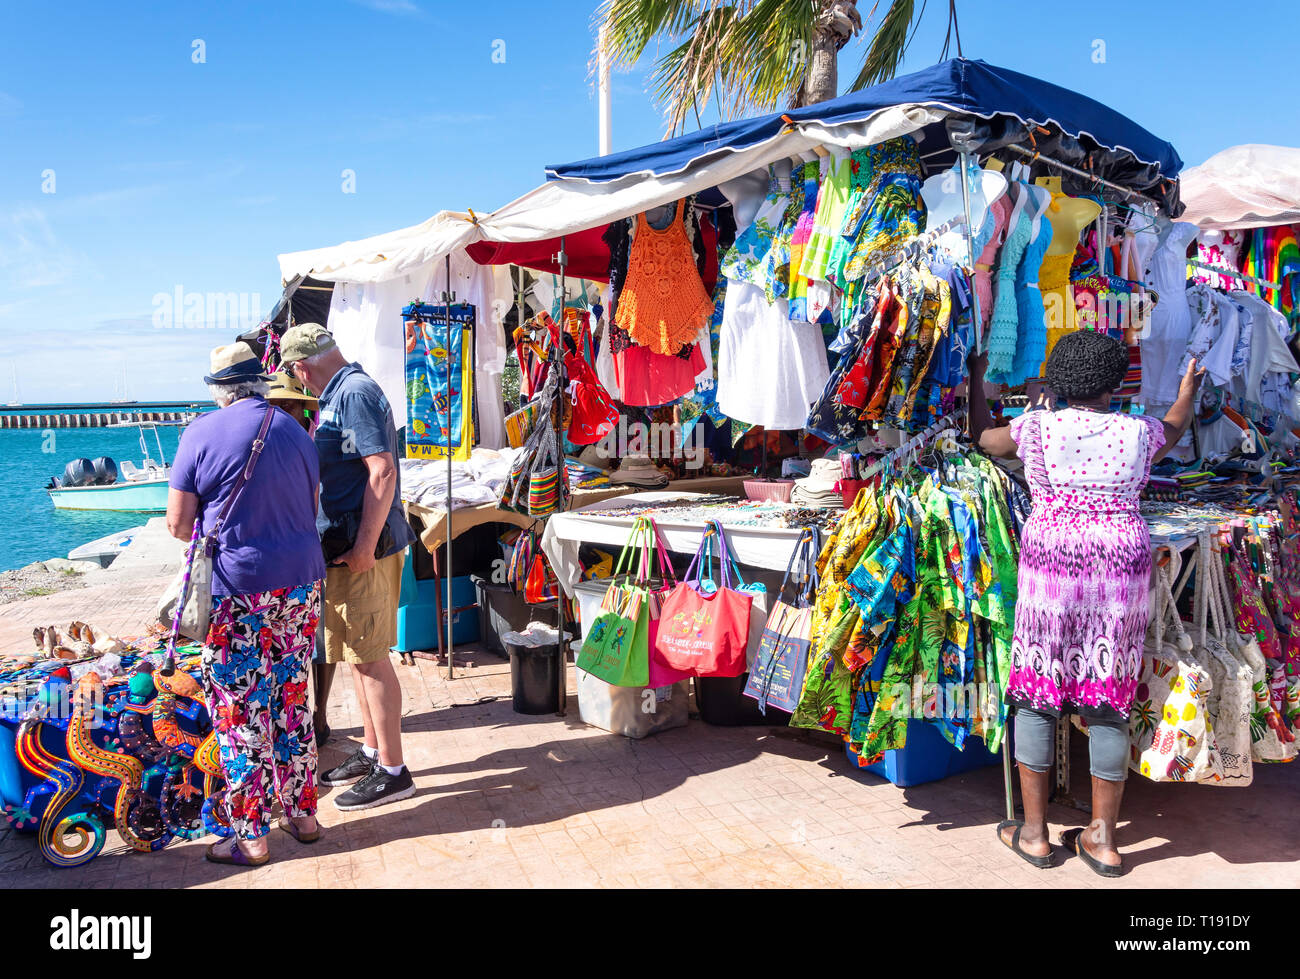 Bancarelle di souvenir, Place du Marché, Marigot, Saint Martin, Piccole Antille, dei Caraibi Foto Stock